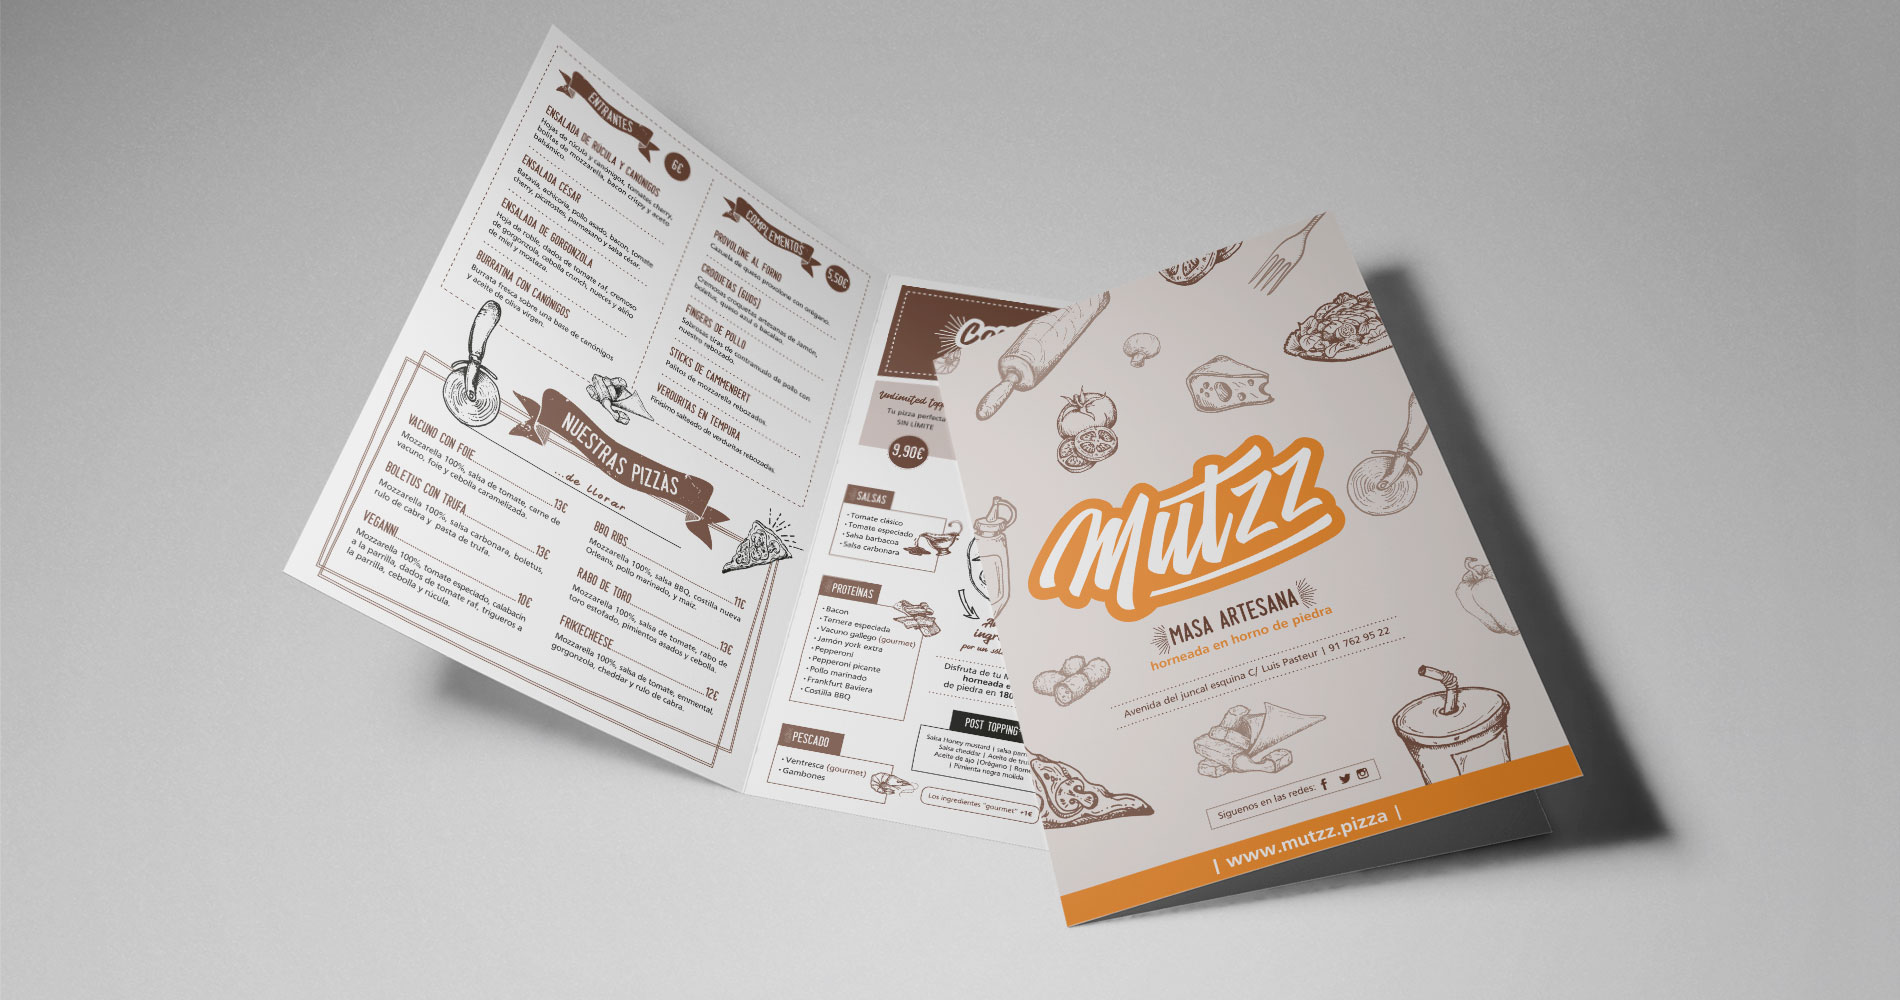 Diseño carta restaurante Mutzz pizza